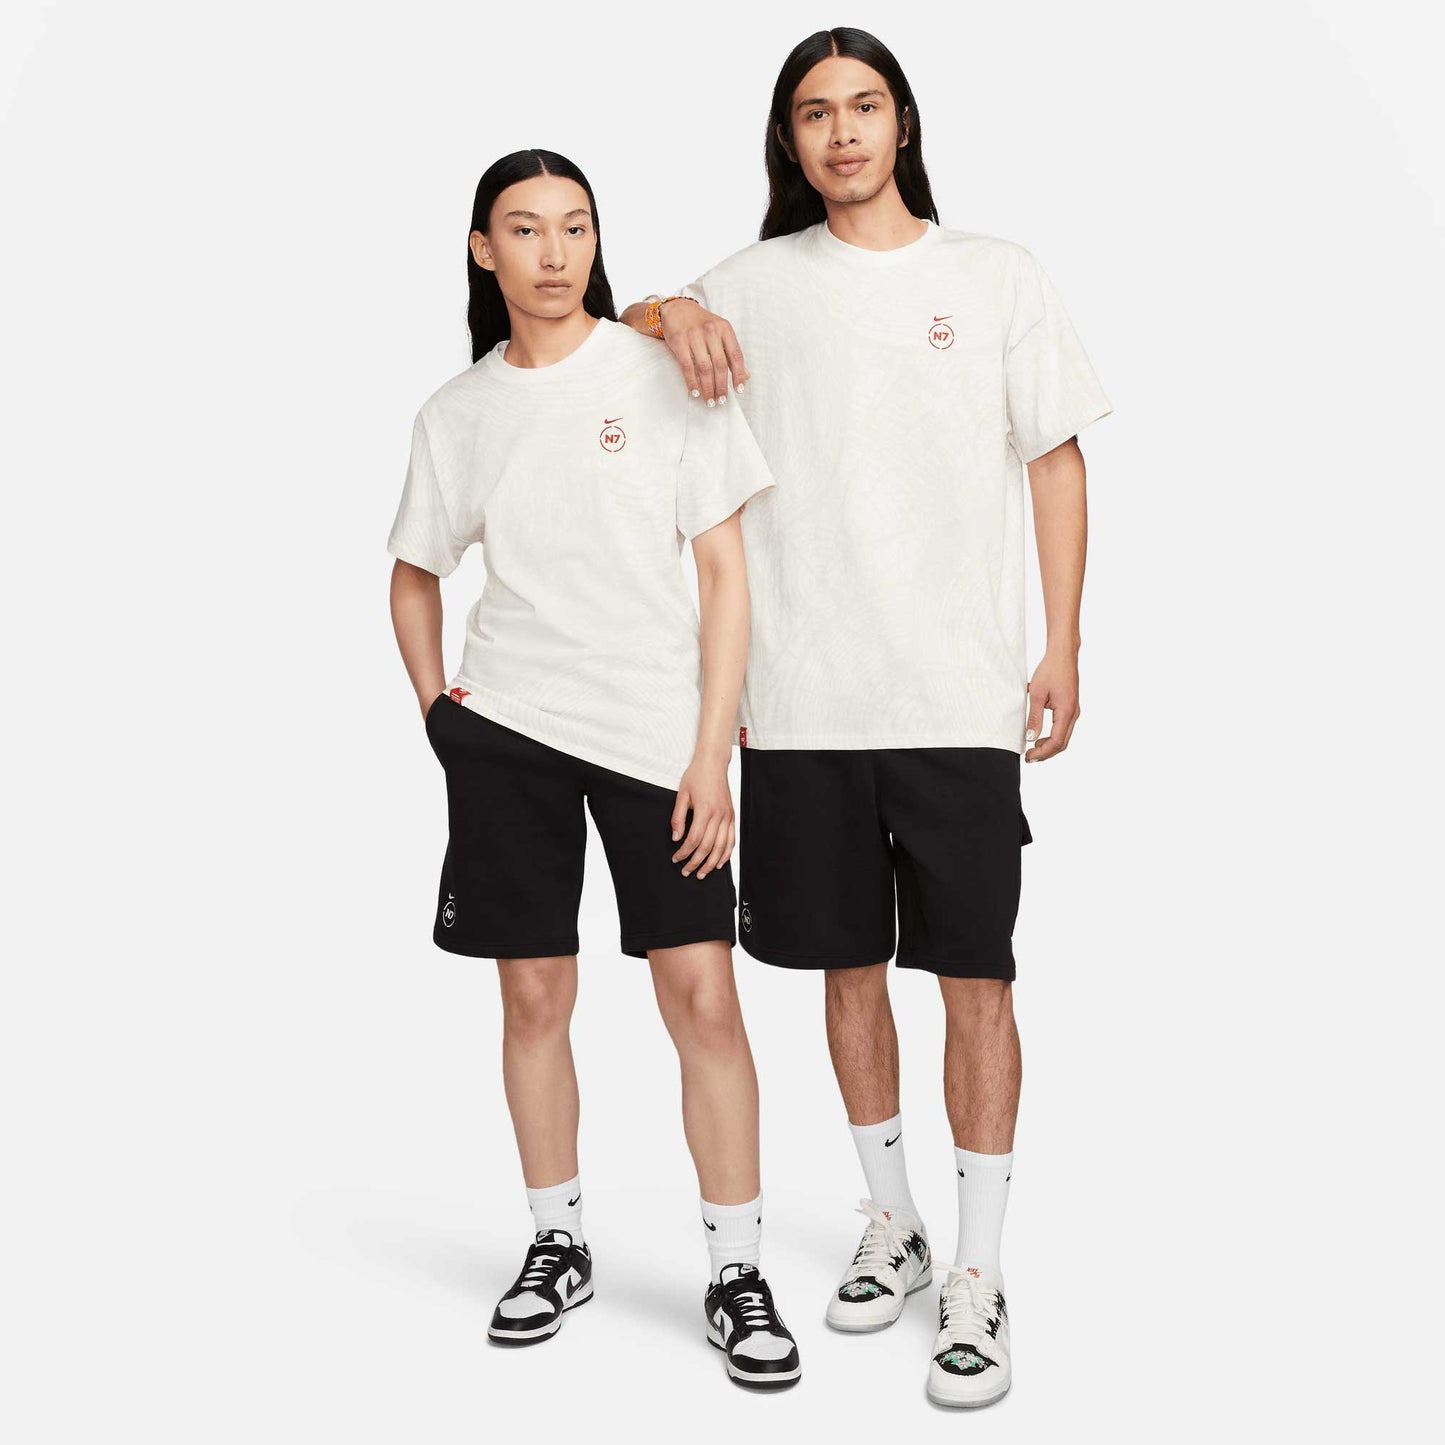 Nike SB N7 Max 90 T-Shirt, sail - Tiki Room Skateboards - 5